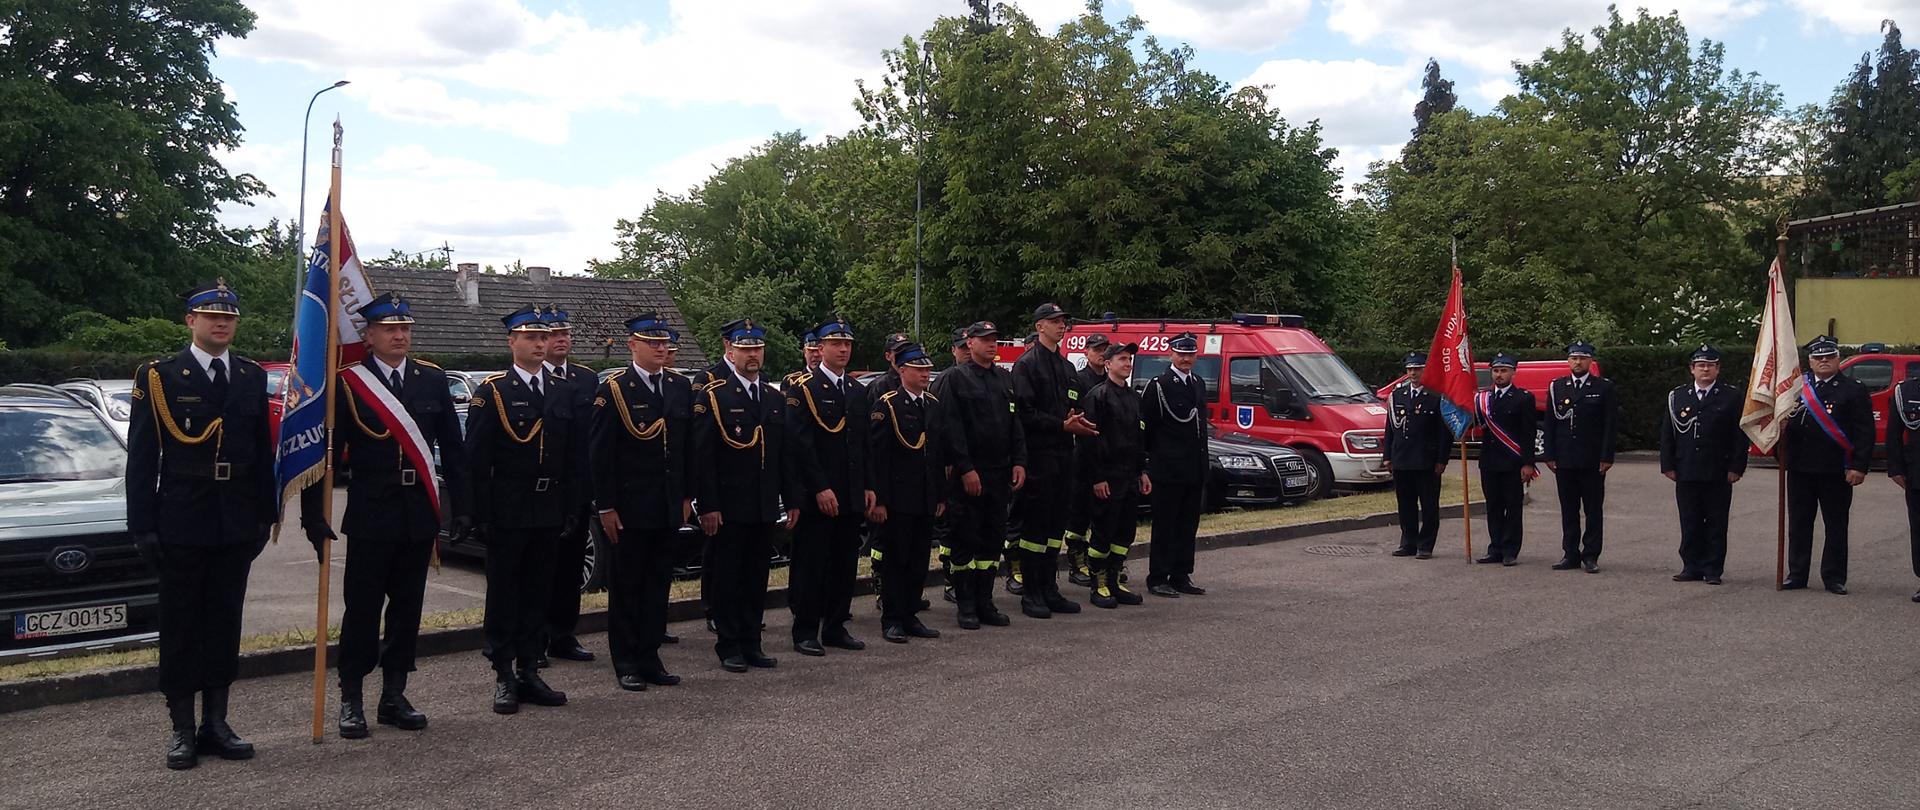 Poczty sztandarowe oraz strażacy, którzy stoją w dwuszeregu na placu Komendy Powiatowej PSP w Człuchowie. W tle samochody pożarnicze.